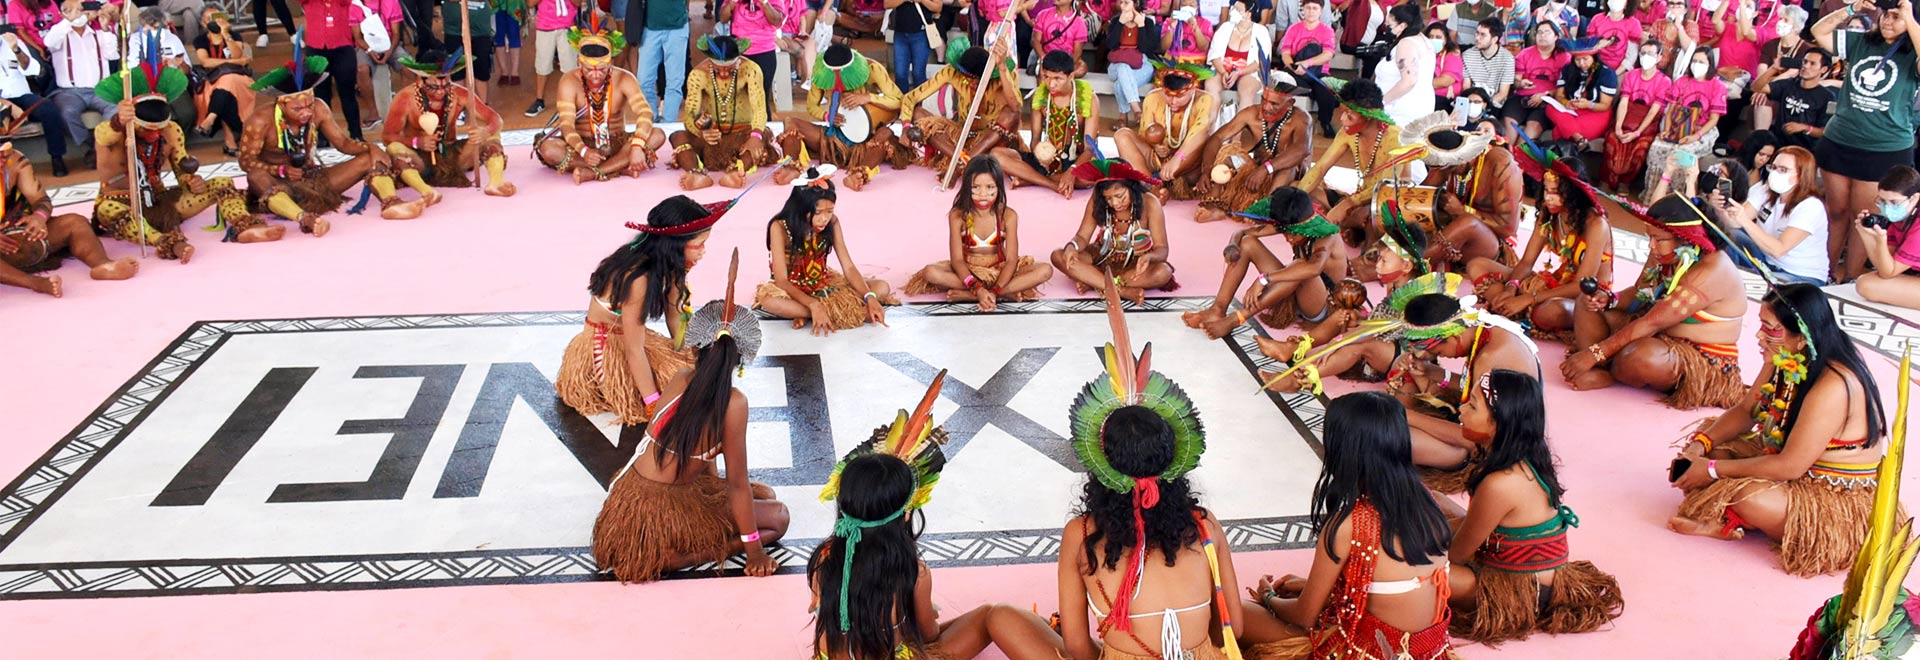 audiodescrição: fotografia colorida de grupo indígena no palco do IX ENEI